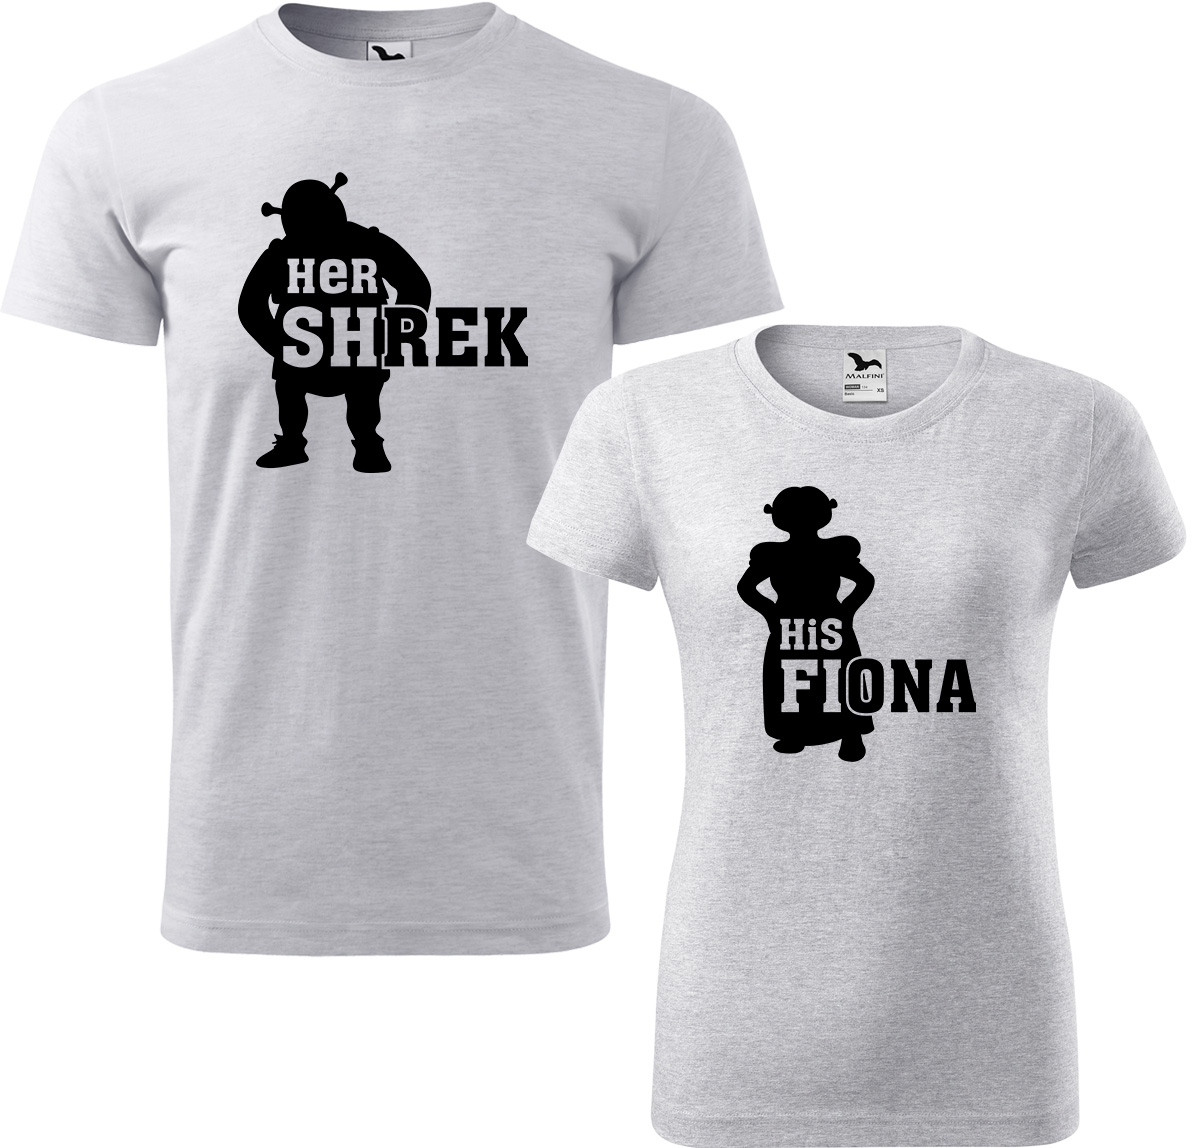 Trička pro páry - Shrek a Fiona Barva: Světle šedý melír (03), Velikost dámské tričko: 2XL, Velikost pánské tričko: XL